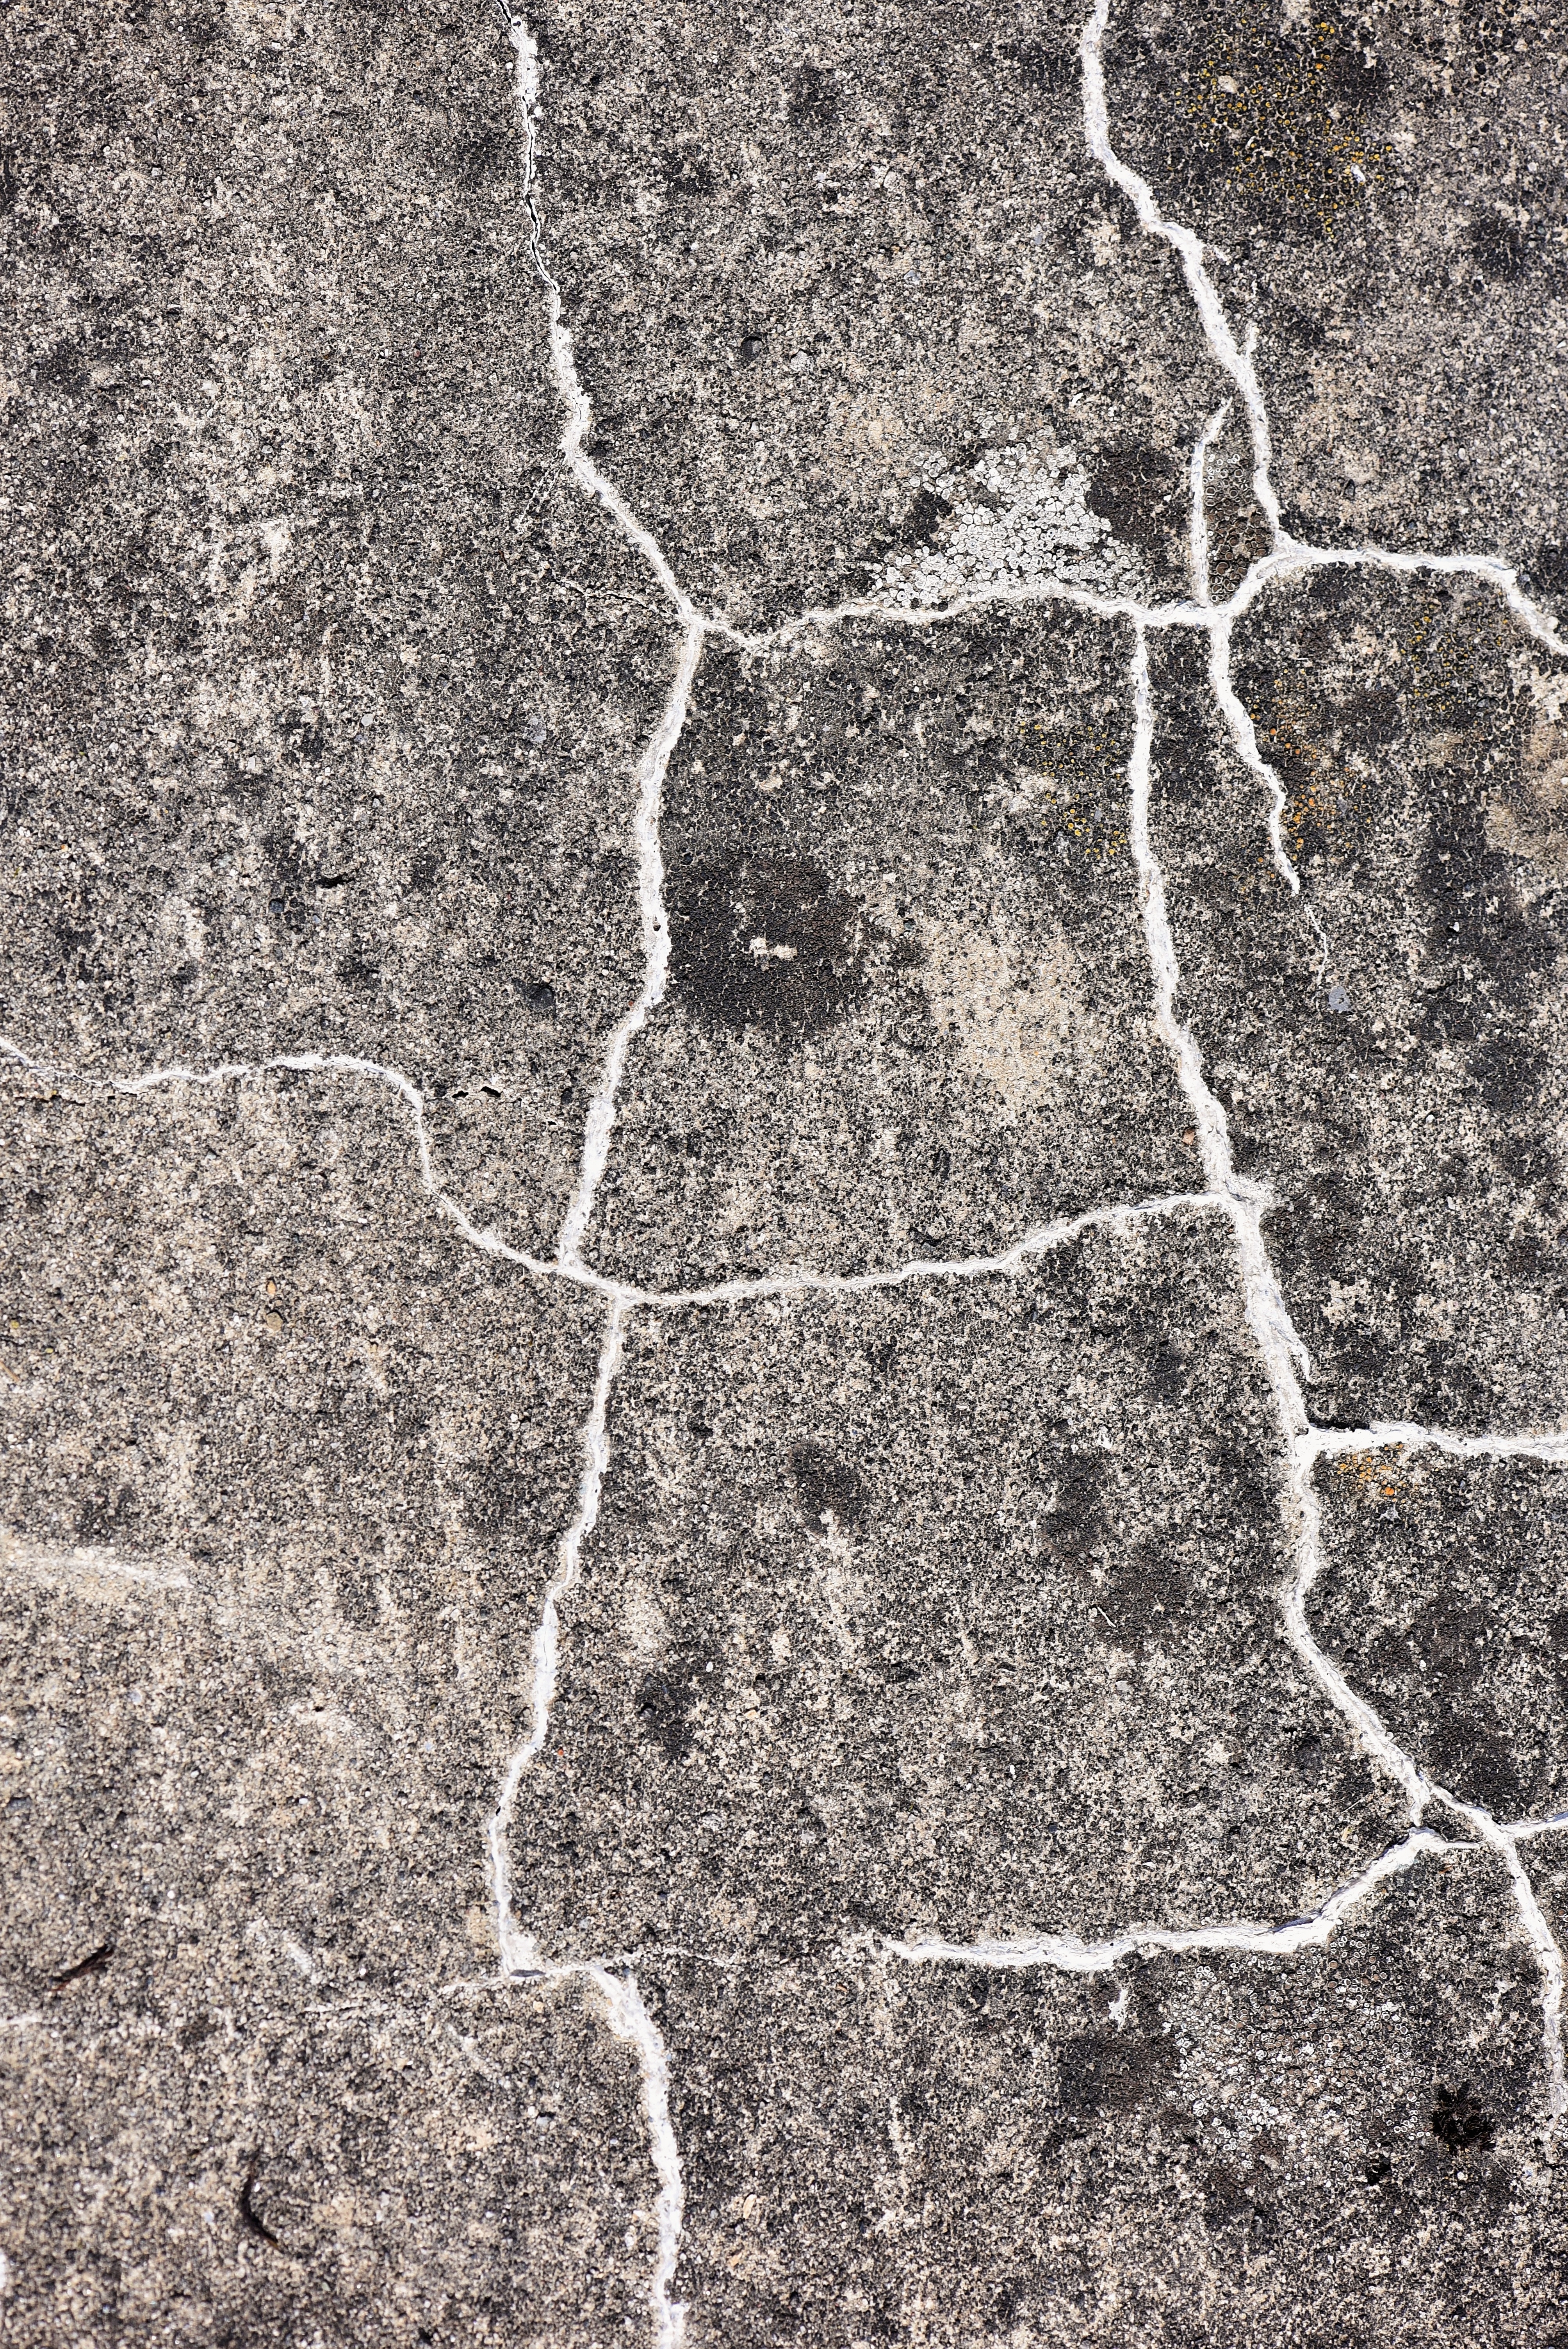 Геологическая трещина. Трещины на Камне. Каменные трещины. Текстура камня с трещинами. Трещина в стене.